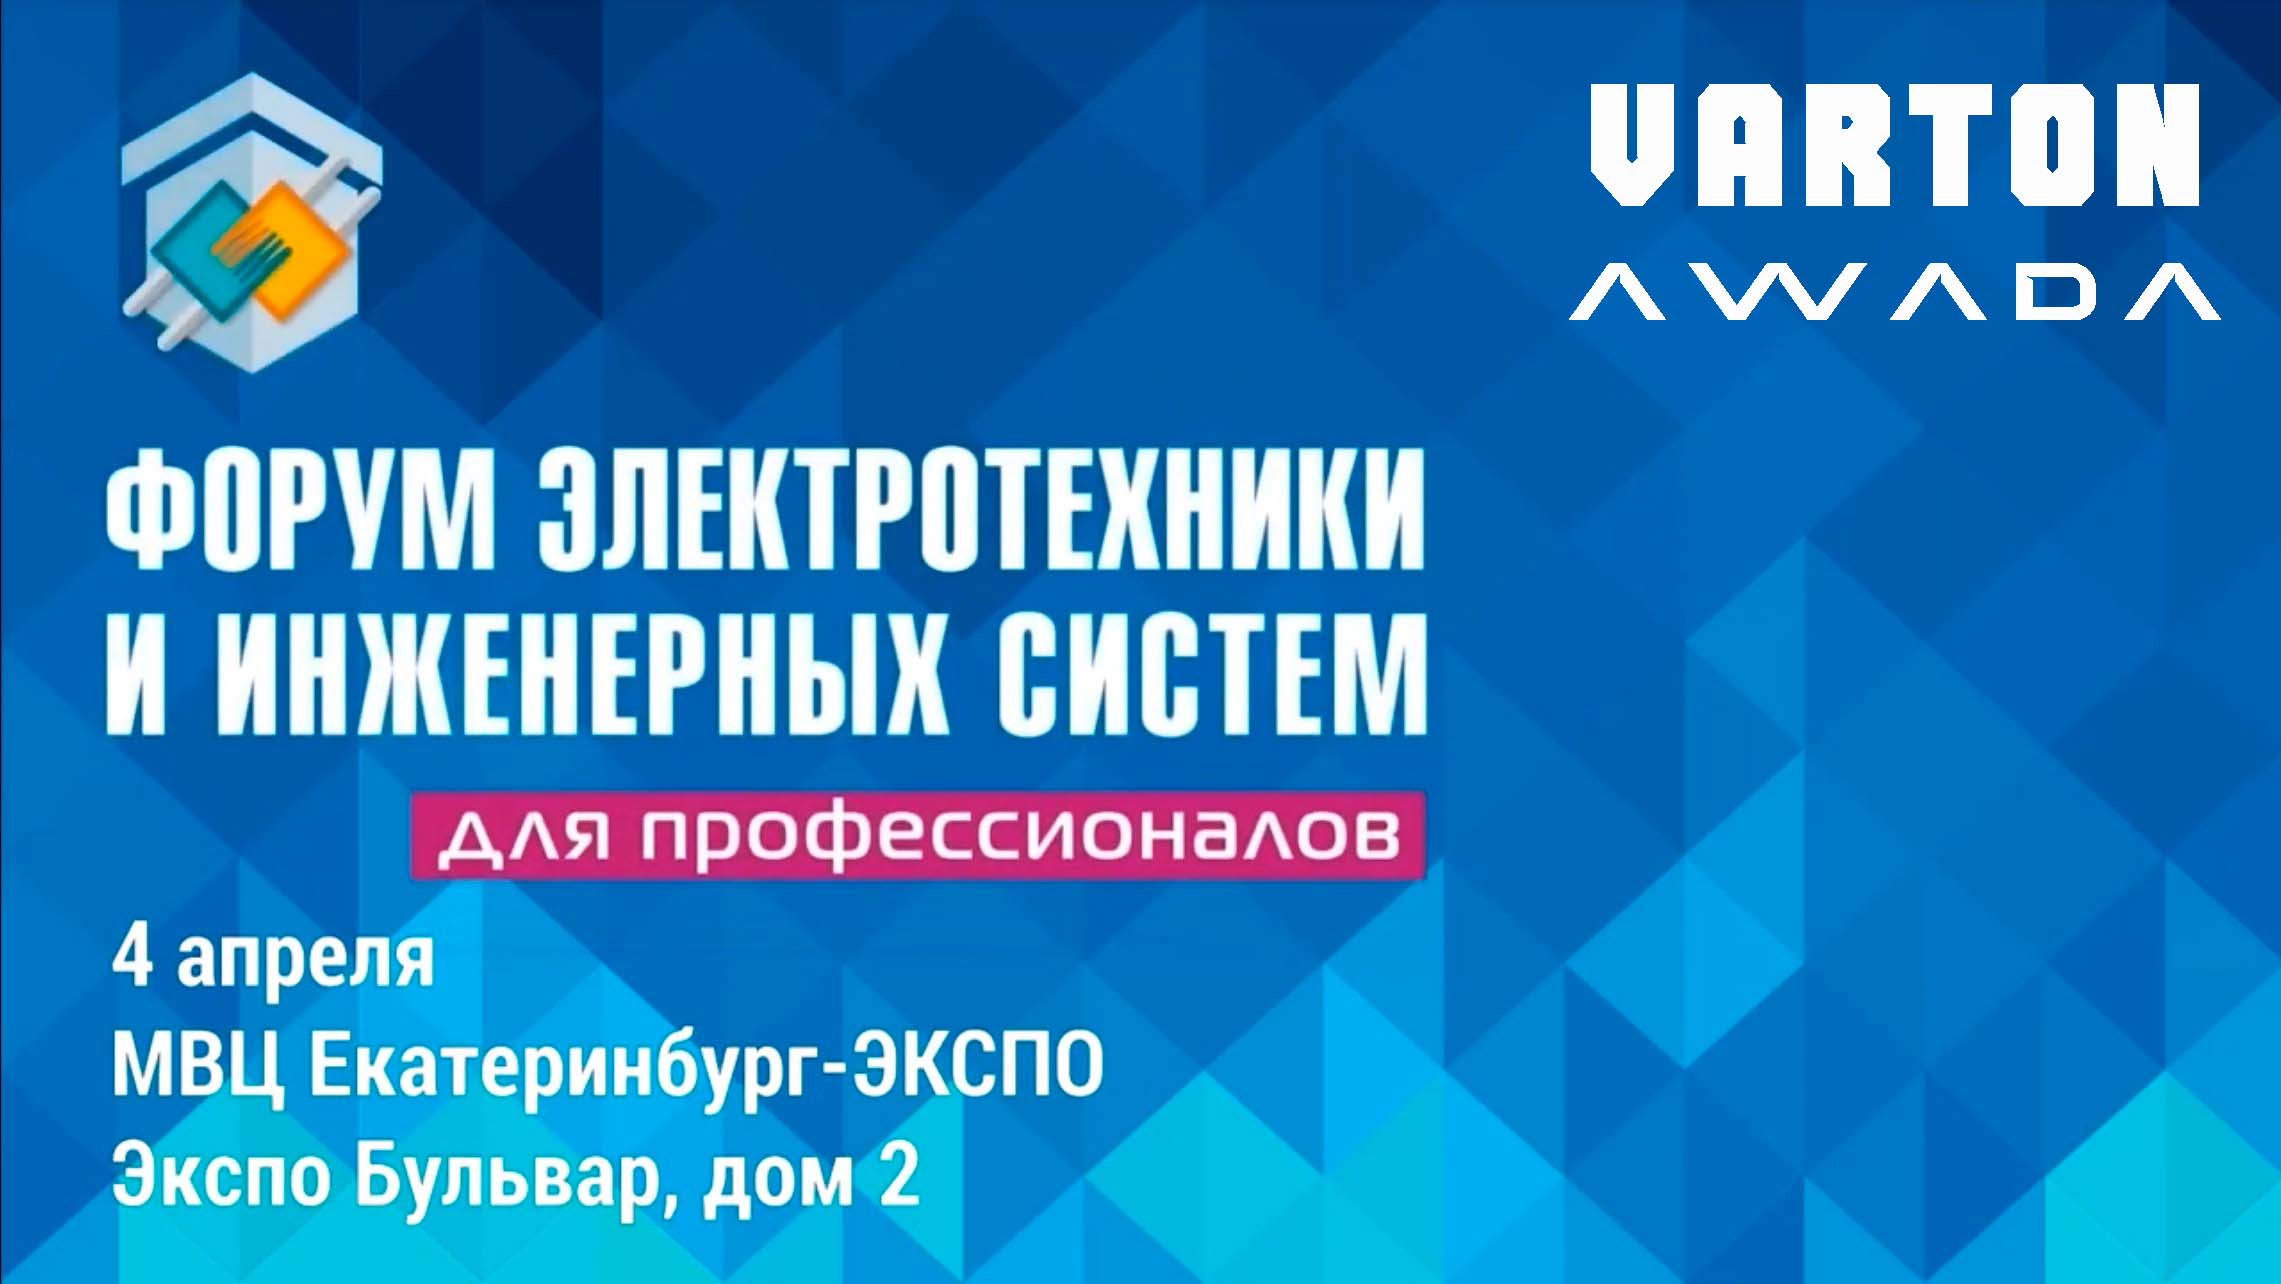 VARTON и AWADA на форуме электротехники и инженерных систем ЭТМ 4 апреля в Екатеринбурге